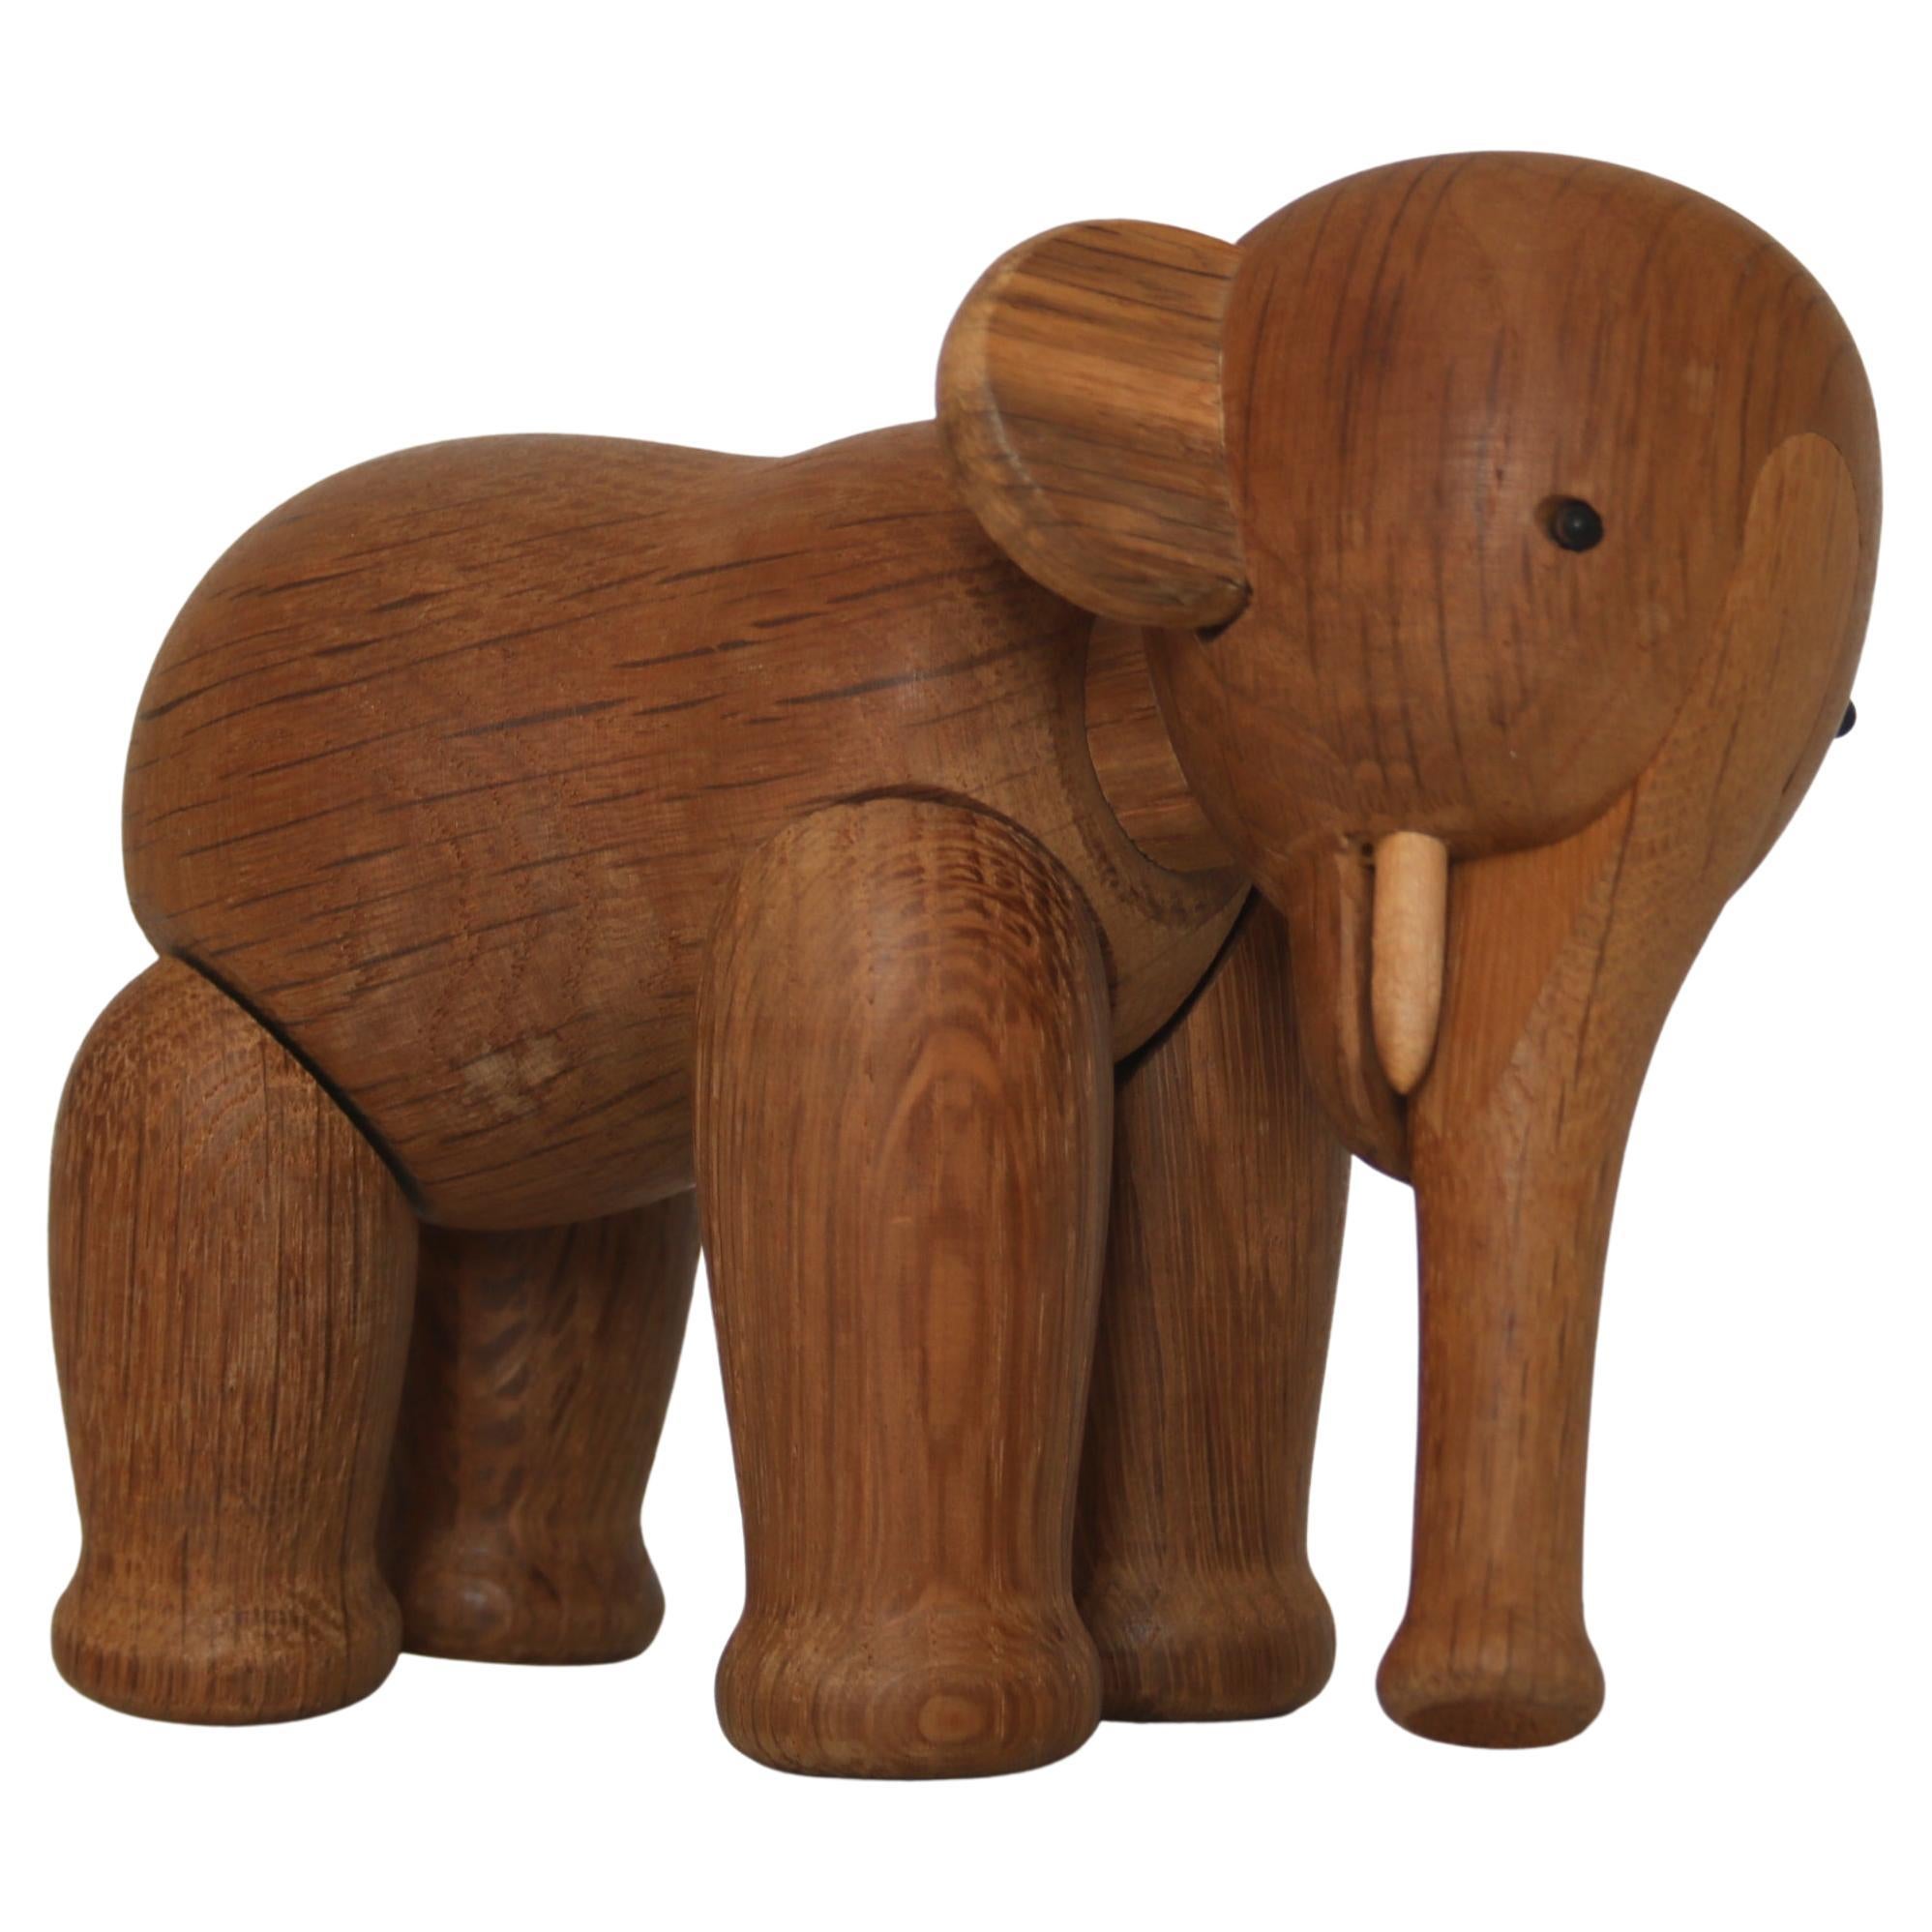 Kay Bojesen Early Handmade Wooden Oak Elephant Children's Toy, 1950s, Denmark